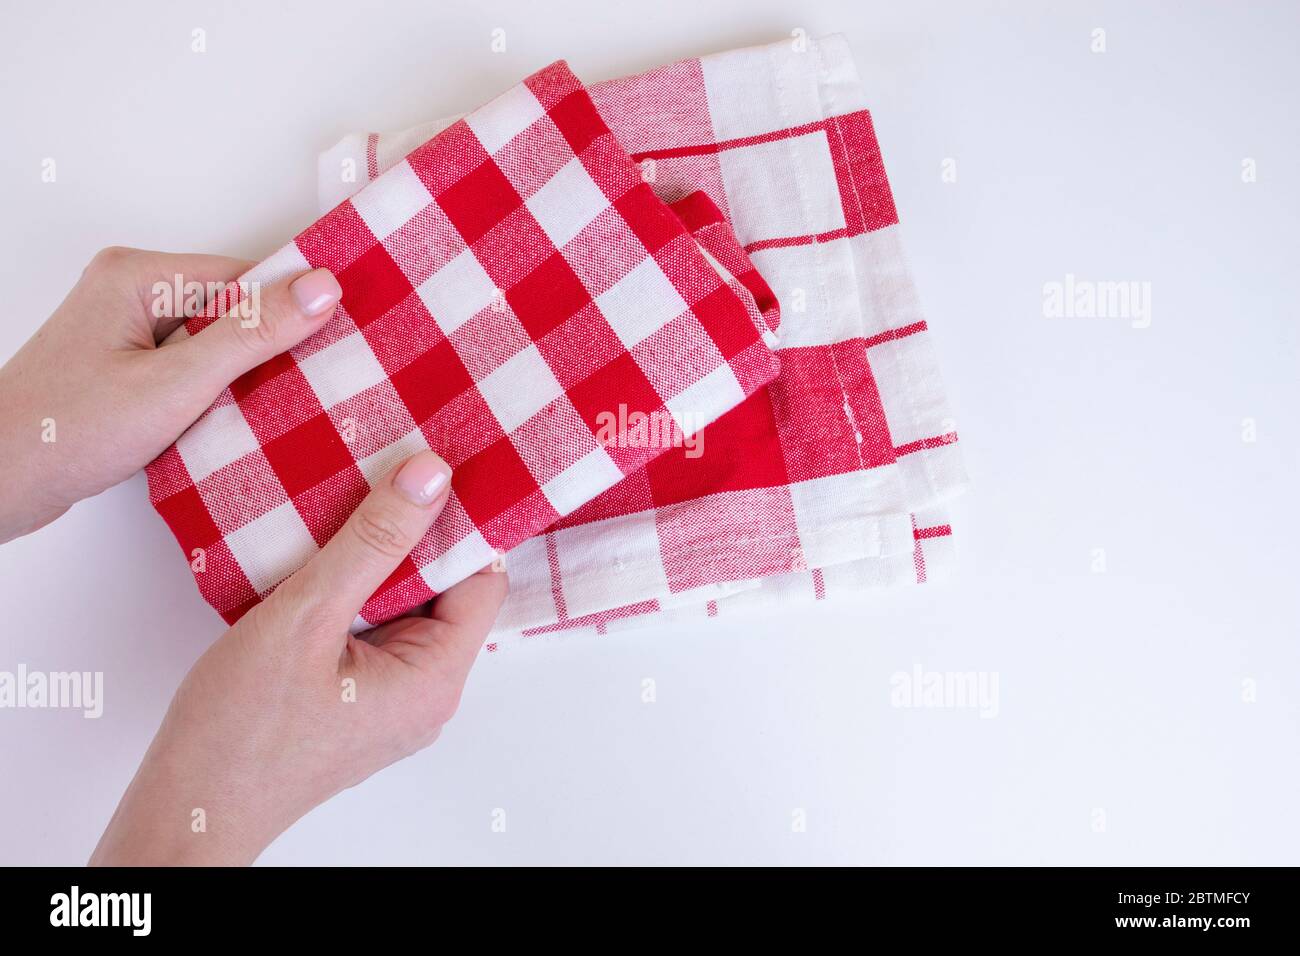 Frau Hände halten rot karierte Küchentücher. Zwei gefaltete rote und weiße Tischdecke in weiblichen Händen auf weißem Hintergrund. Stockfoto